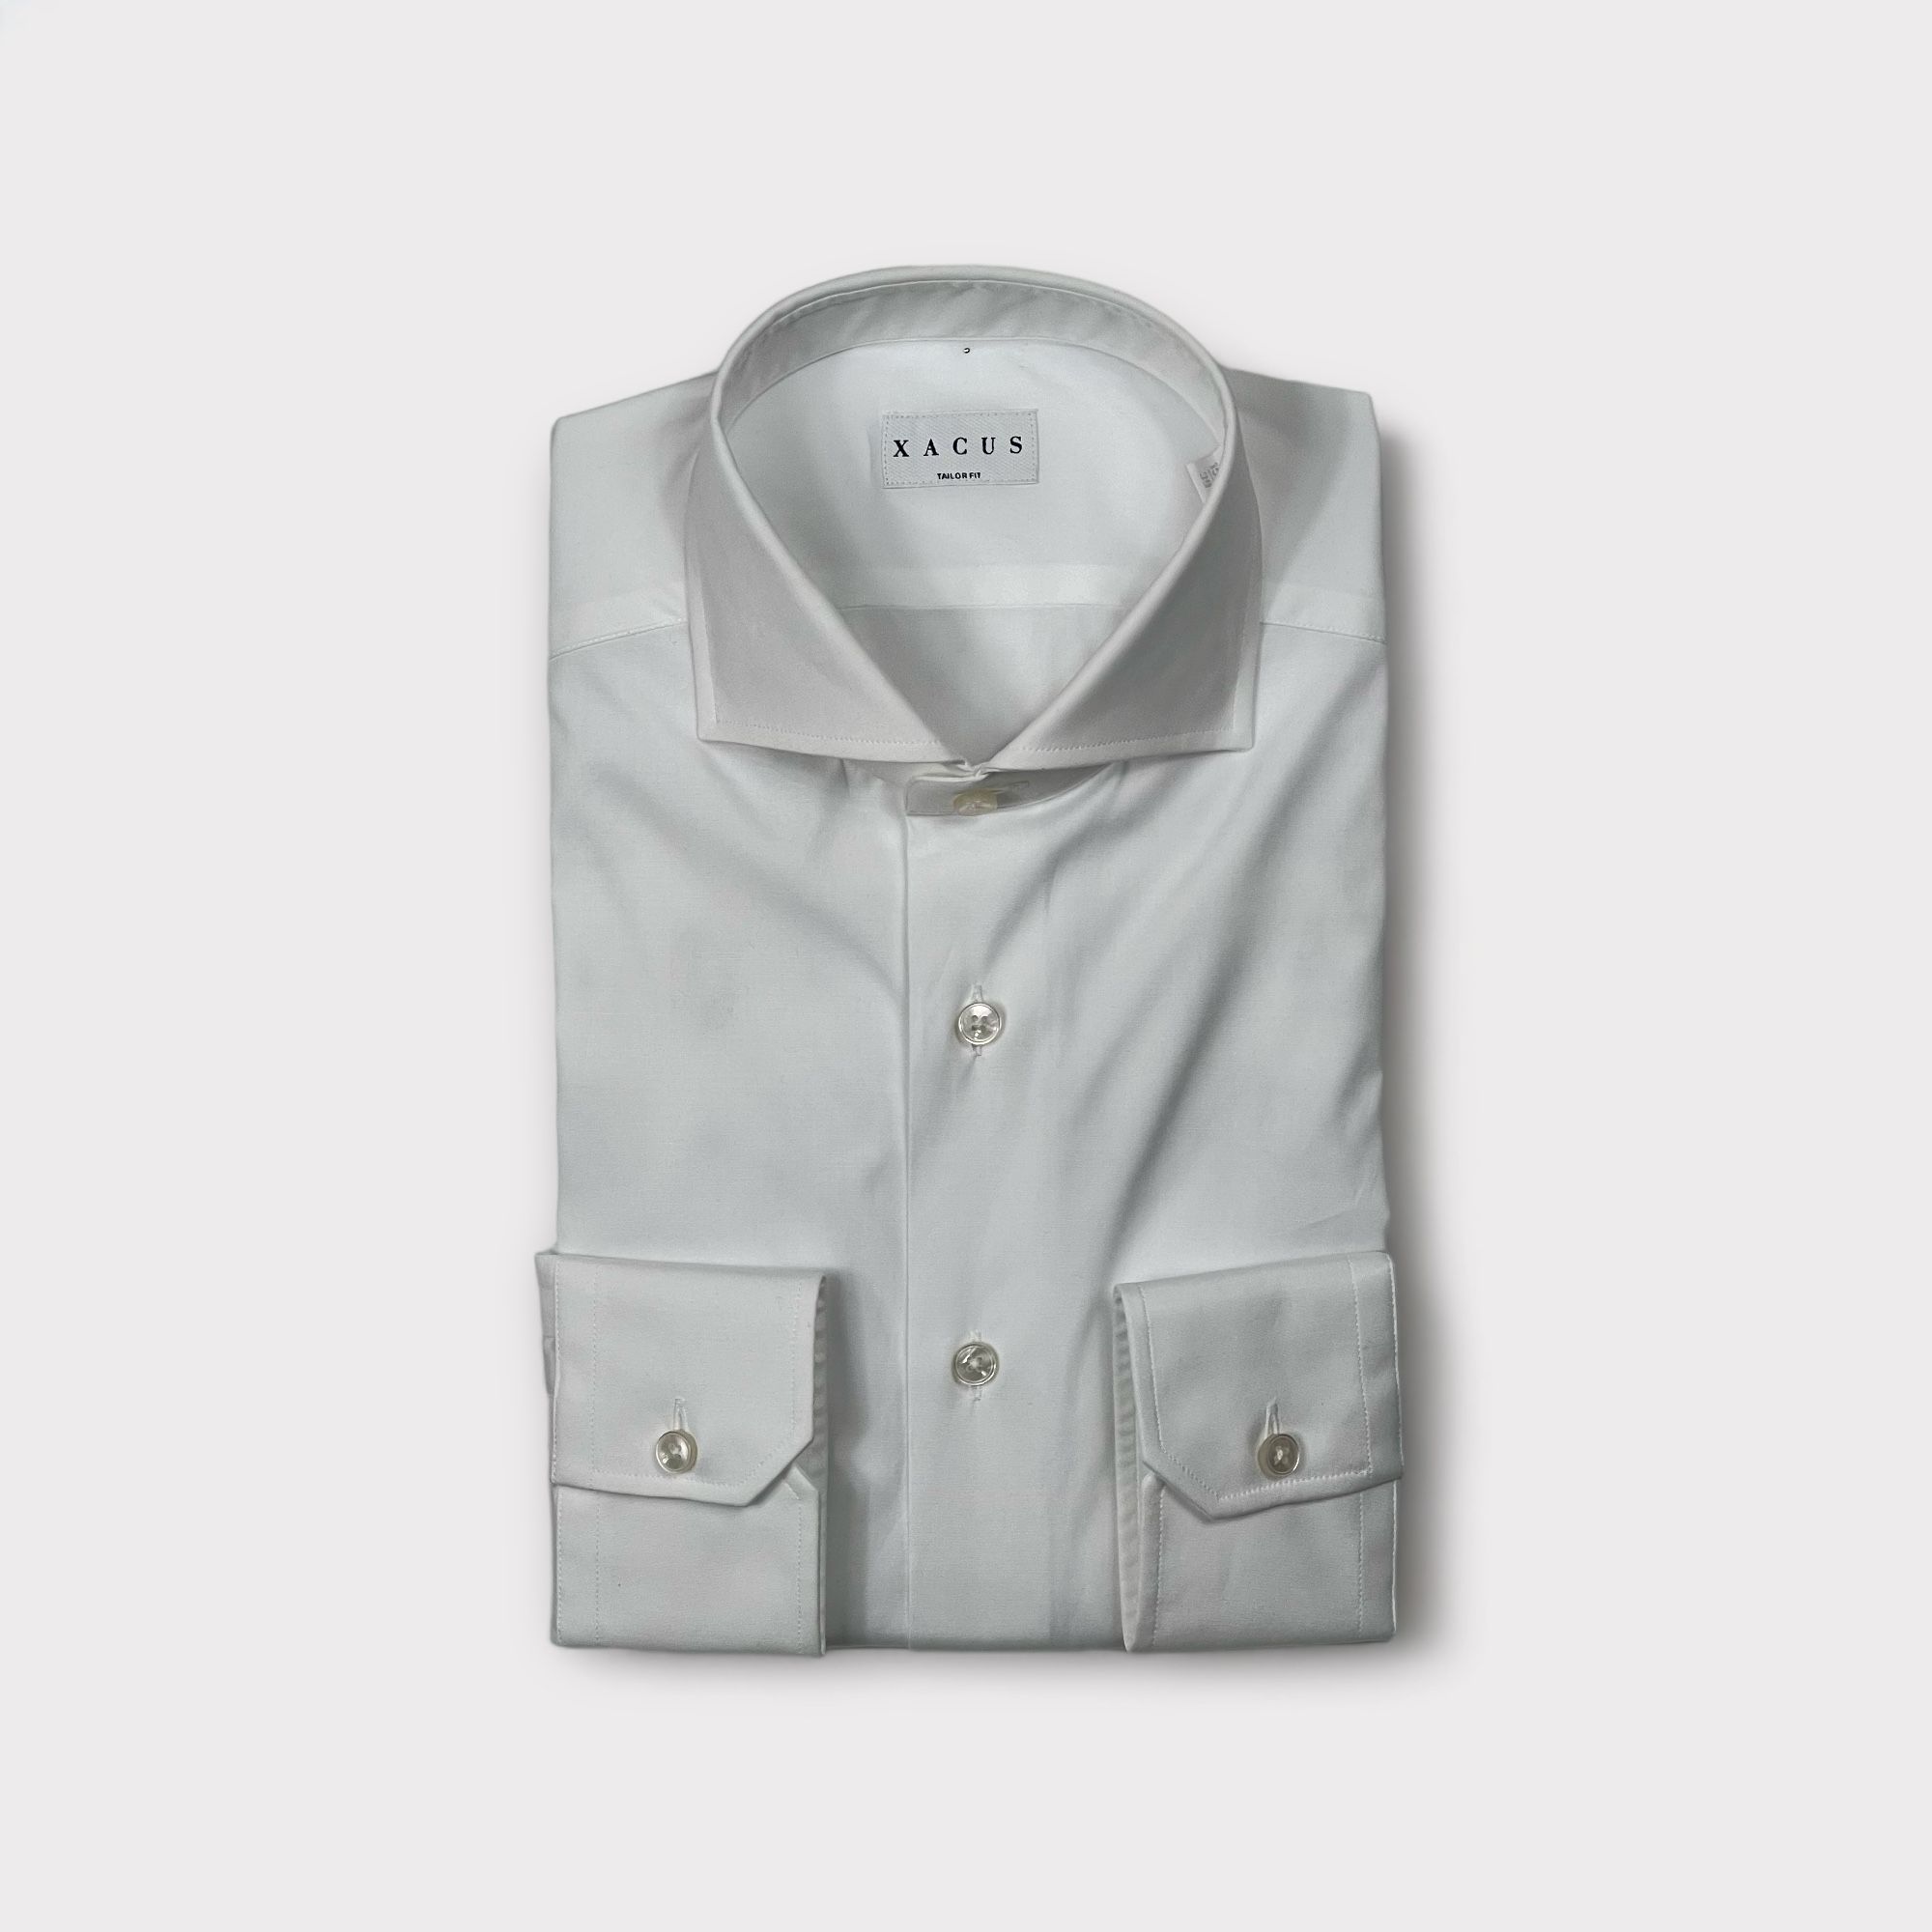 Xacus - Camicia con collo francese in cotone popeline stretch